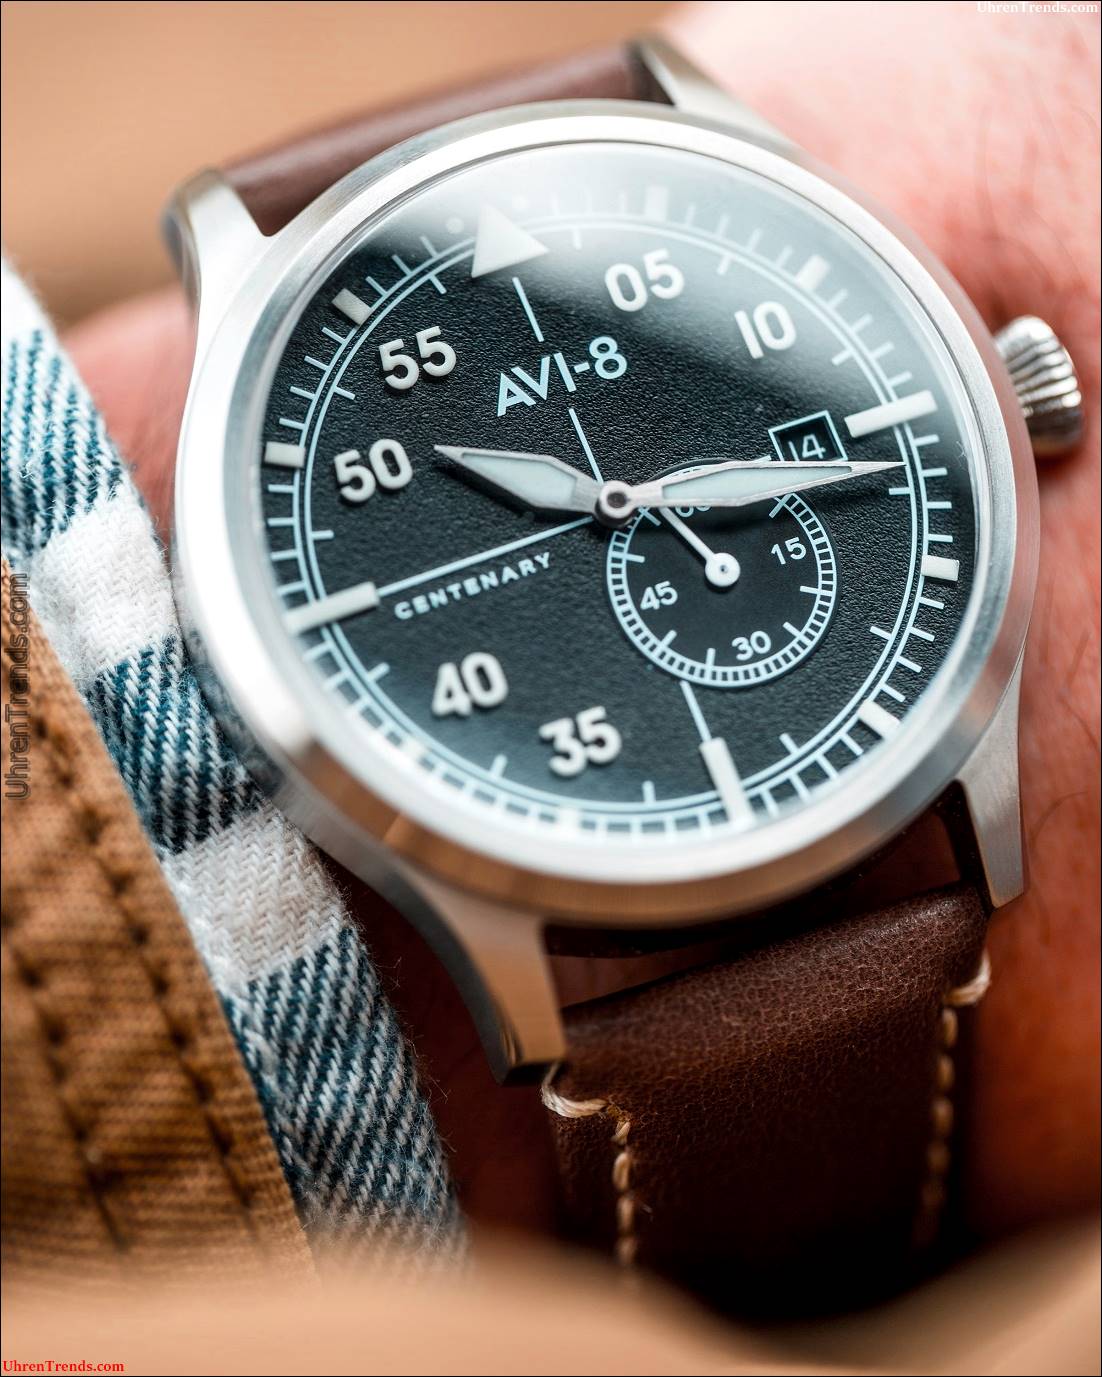 AVI-8 Flyboy hundertjährige Uhren  